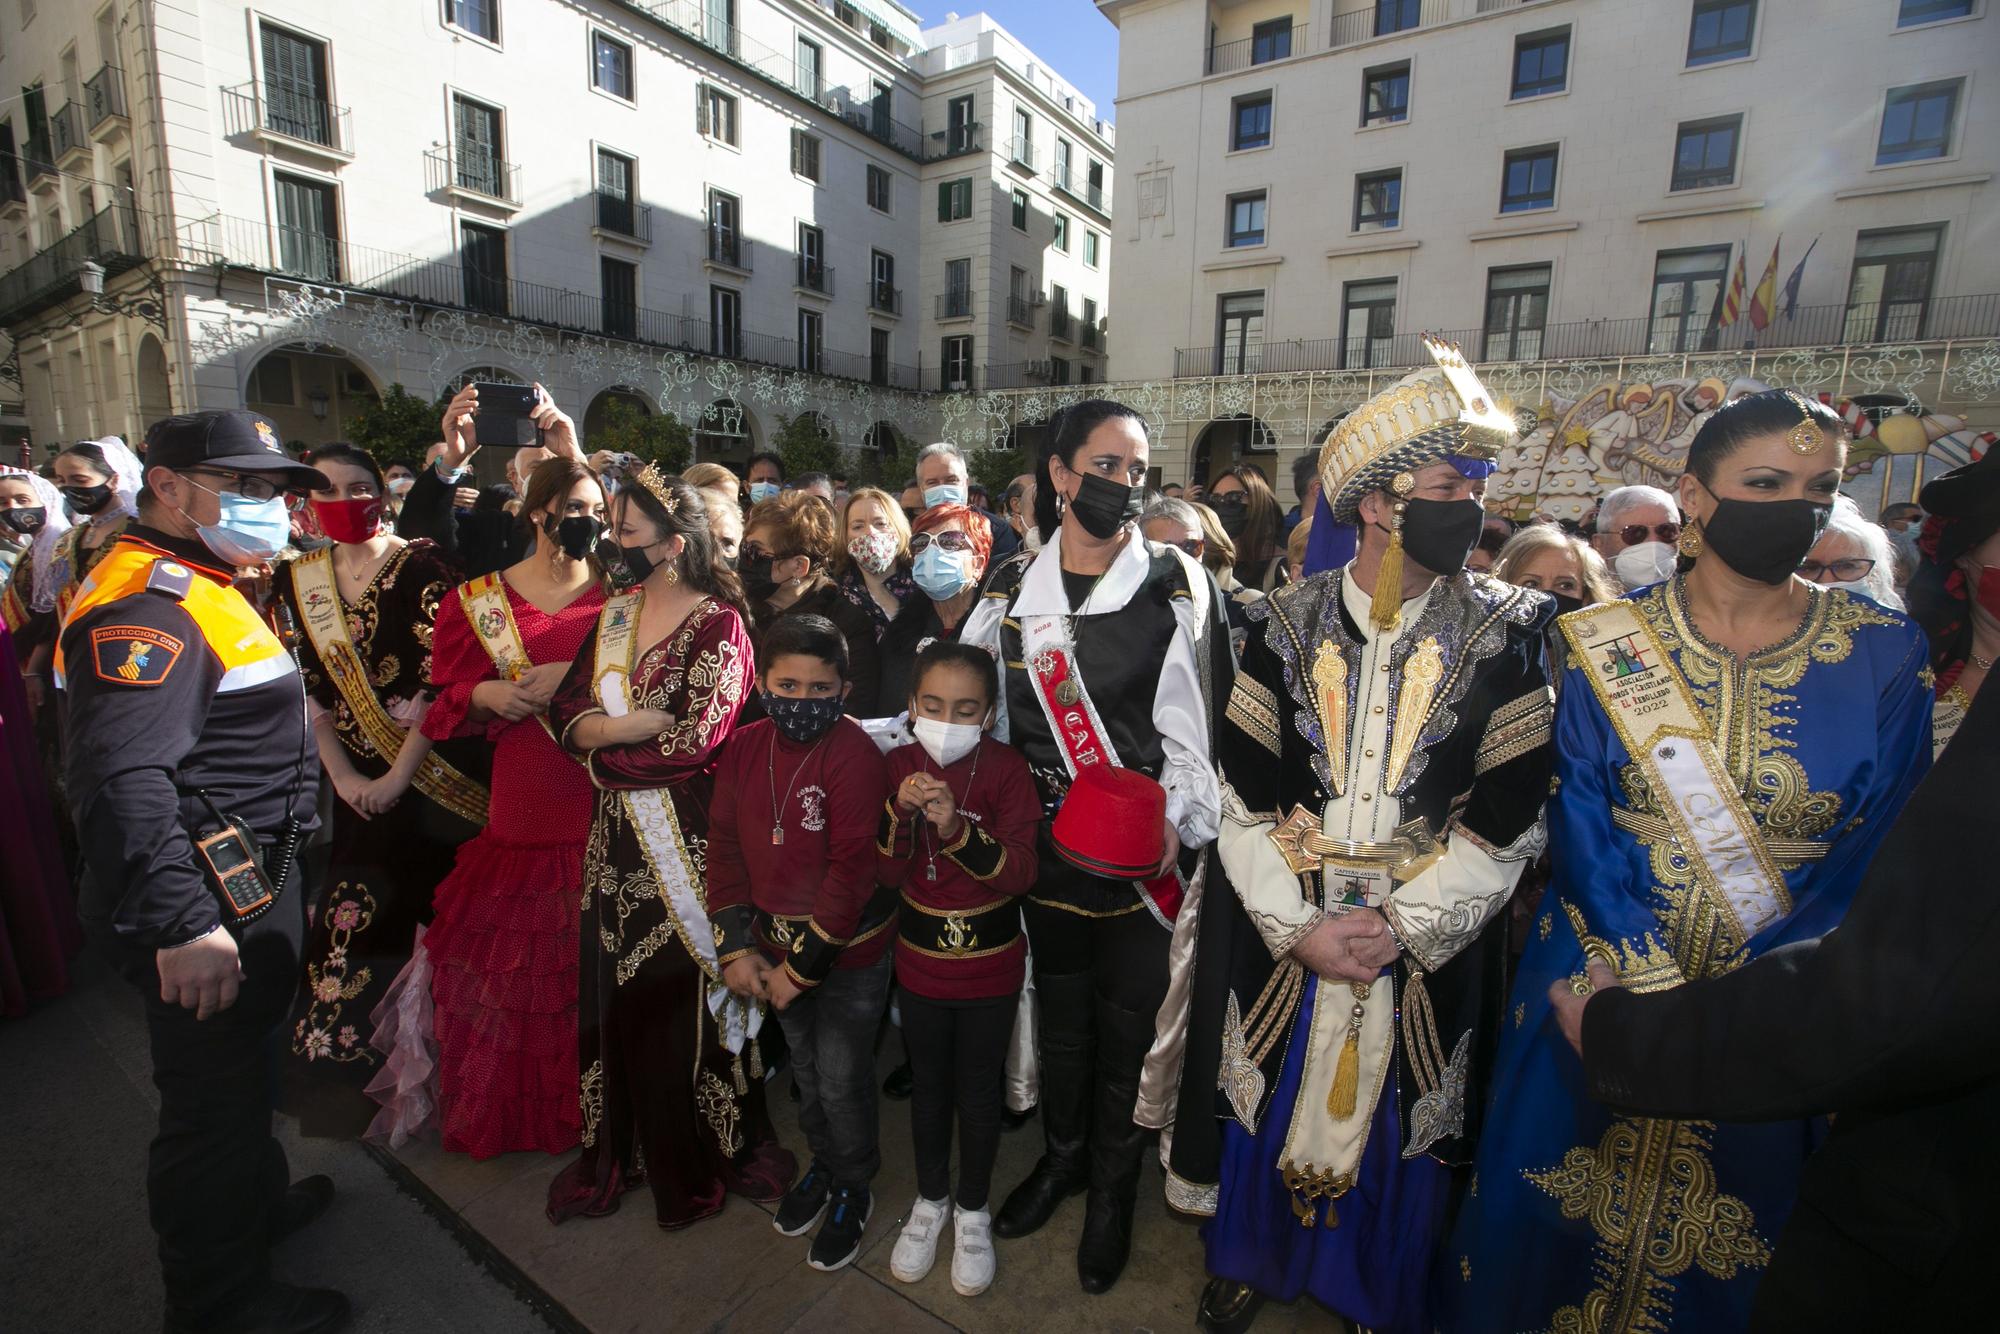 Procesión de San Nicolás y ambiente festivo en Alicante por el Día de la Constitución